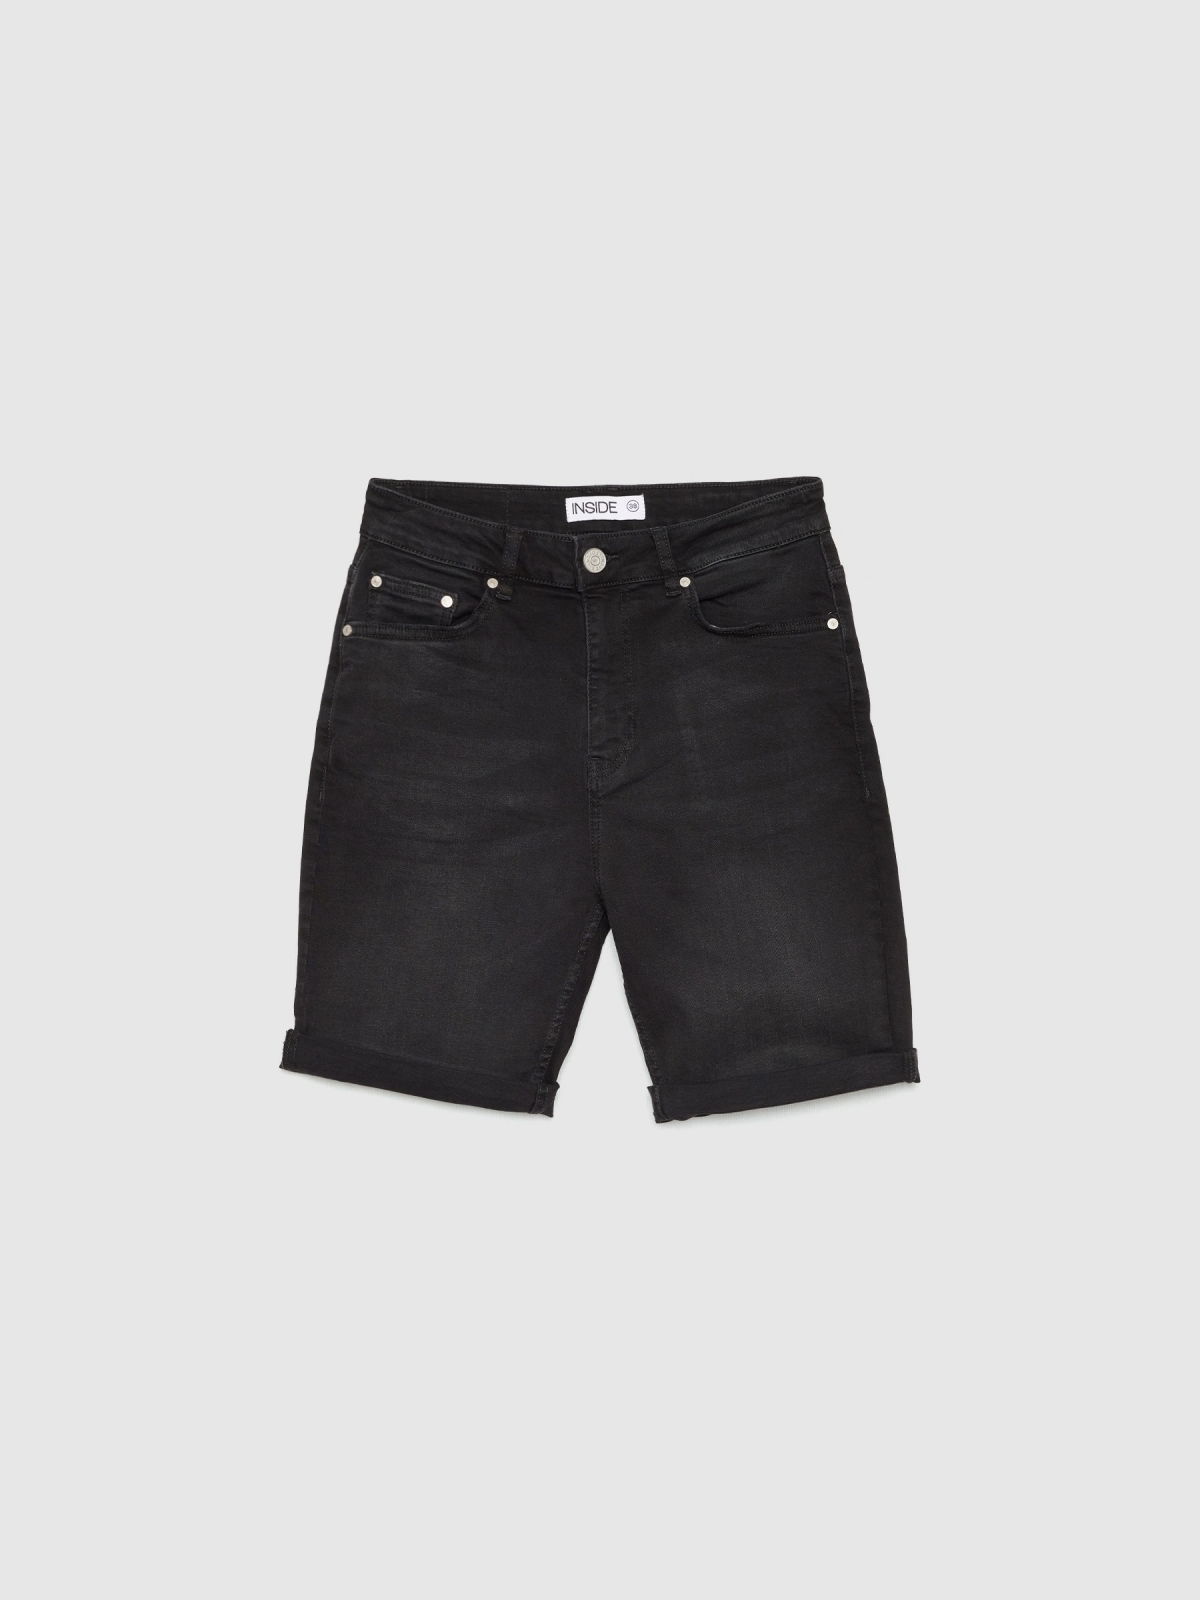  Black denim slim shorts black